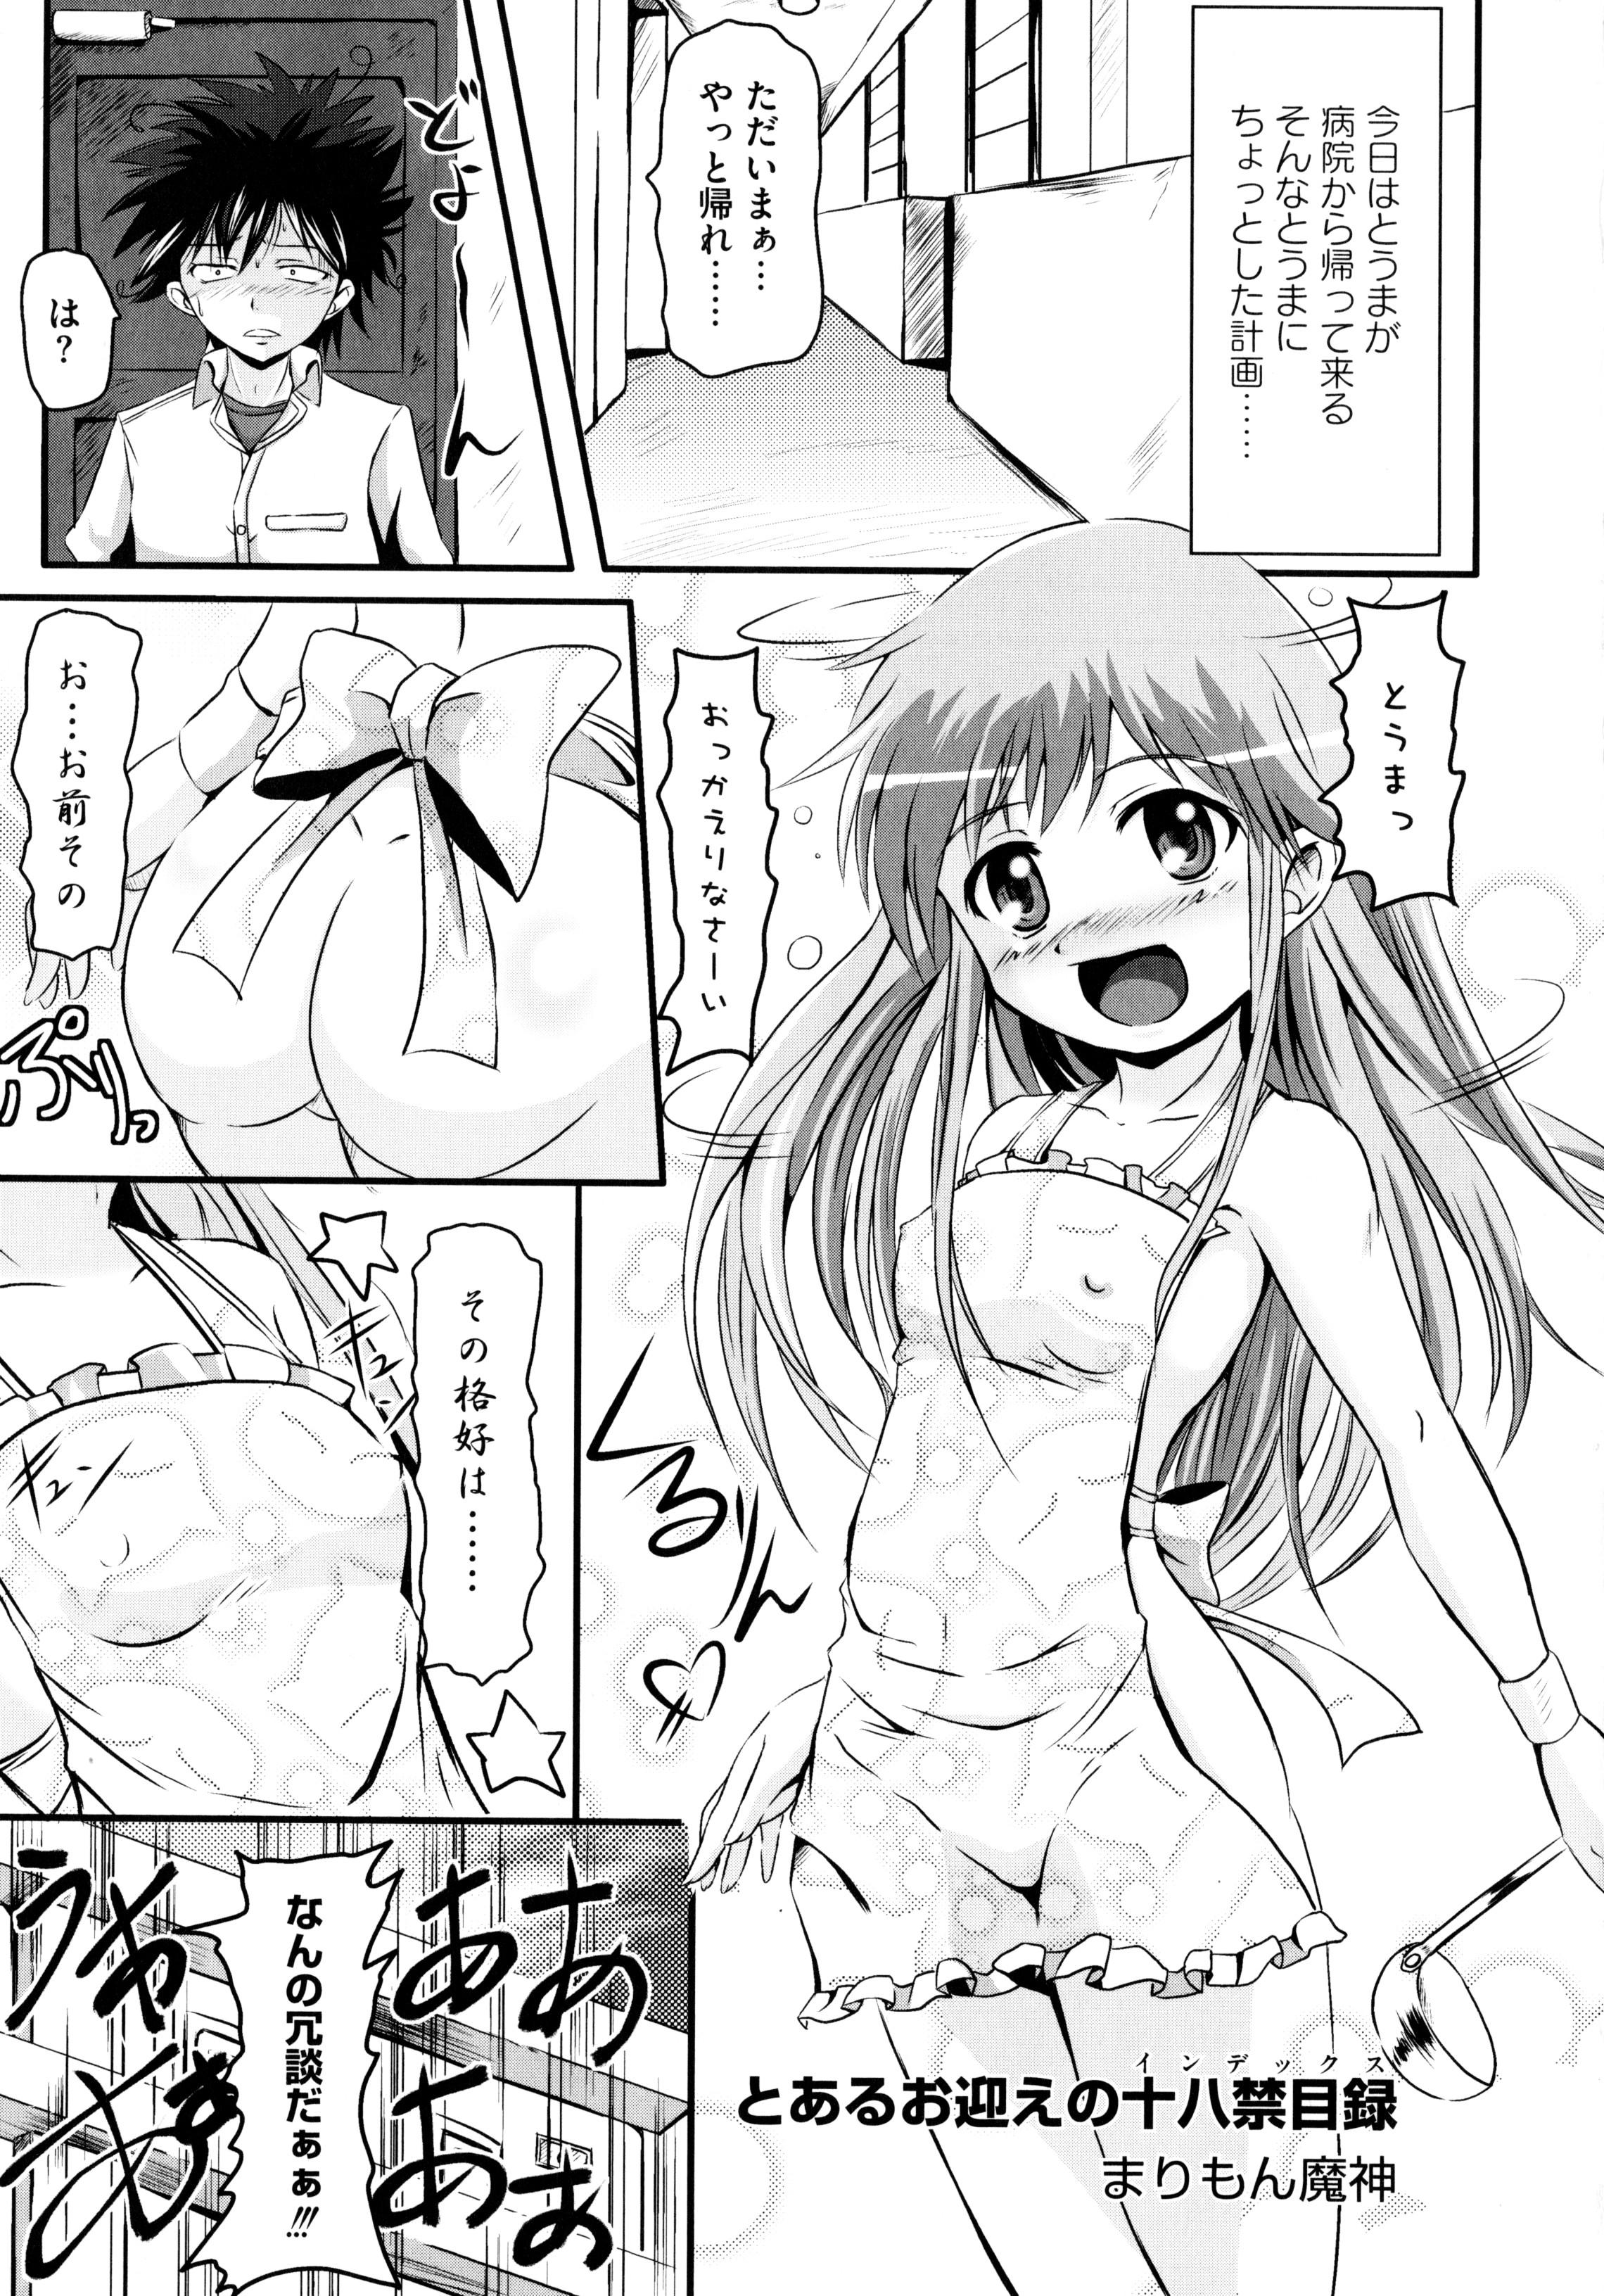 Gagging Toaru Inbi na Erosho Mokuroku - Toaru kagaku no railgun Toaru majutsu no index Wetpussy - Page 5